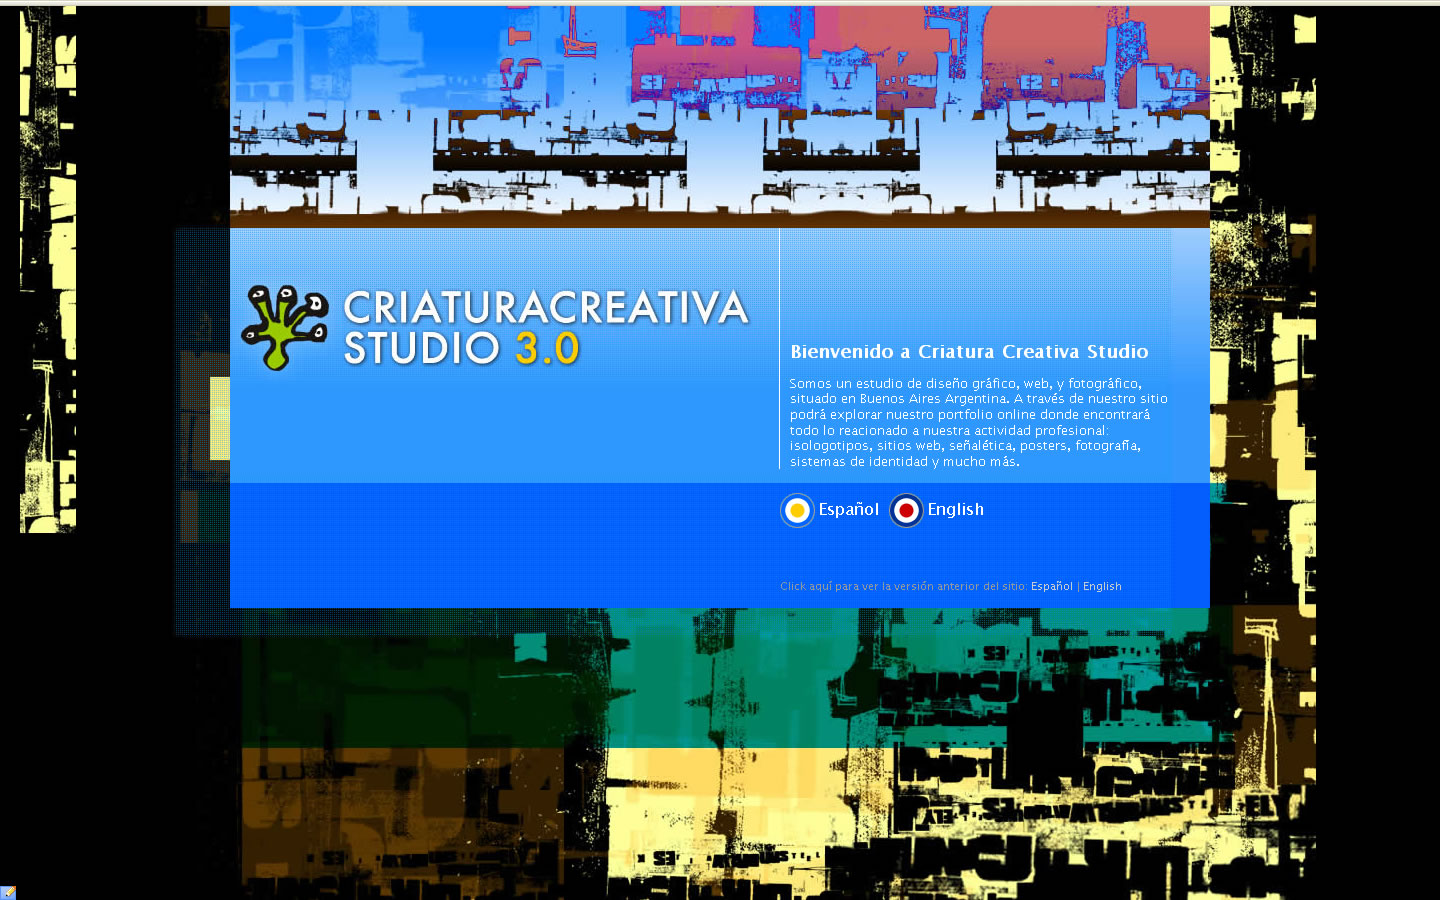 Criatura Creativa Studio (CriaturaCreativaStudio)